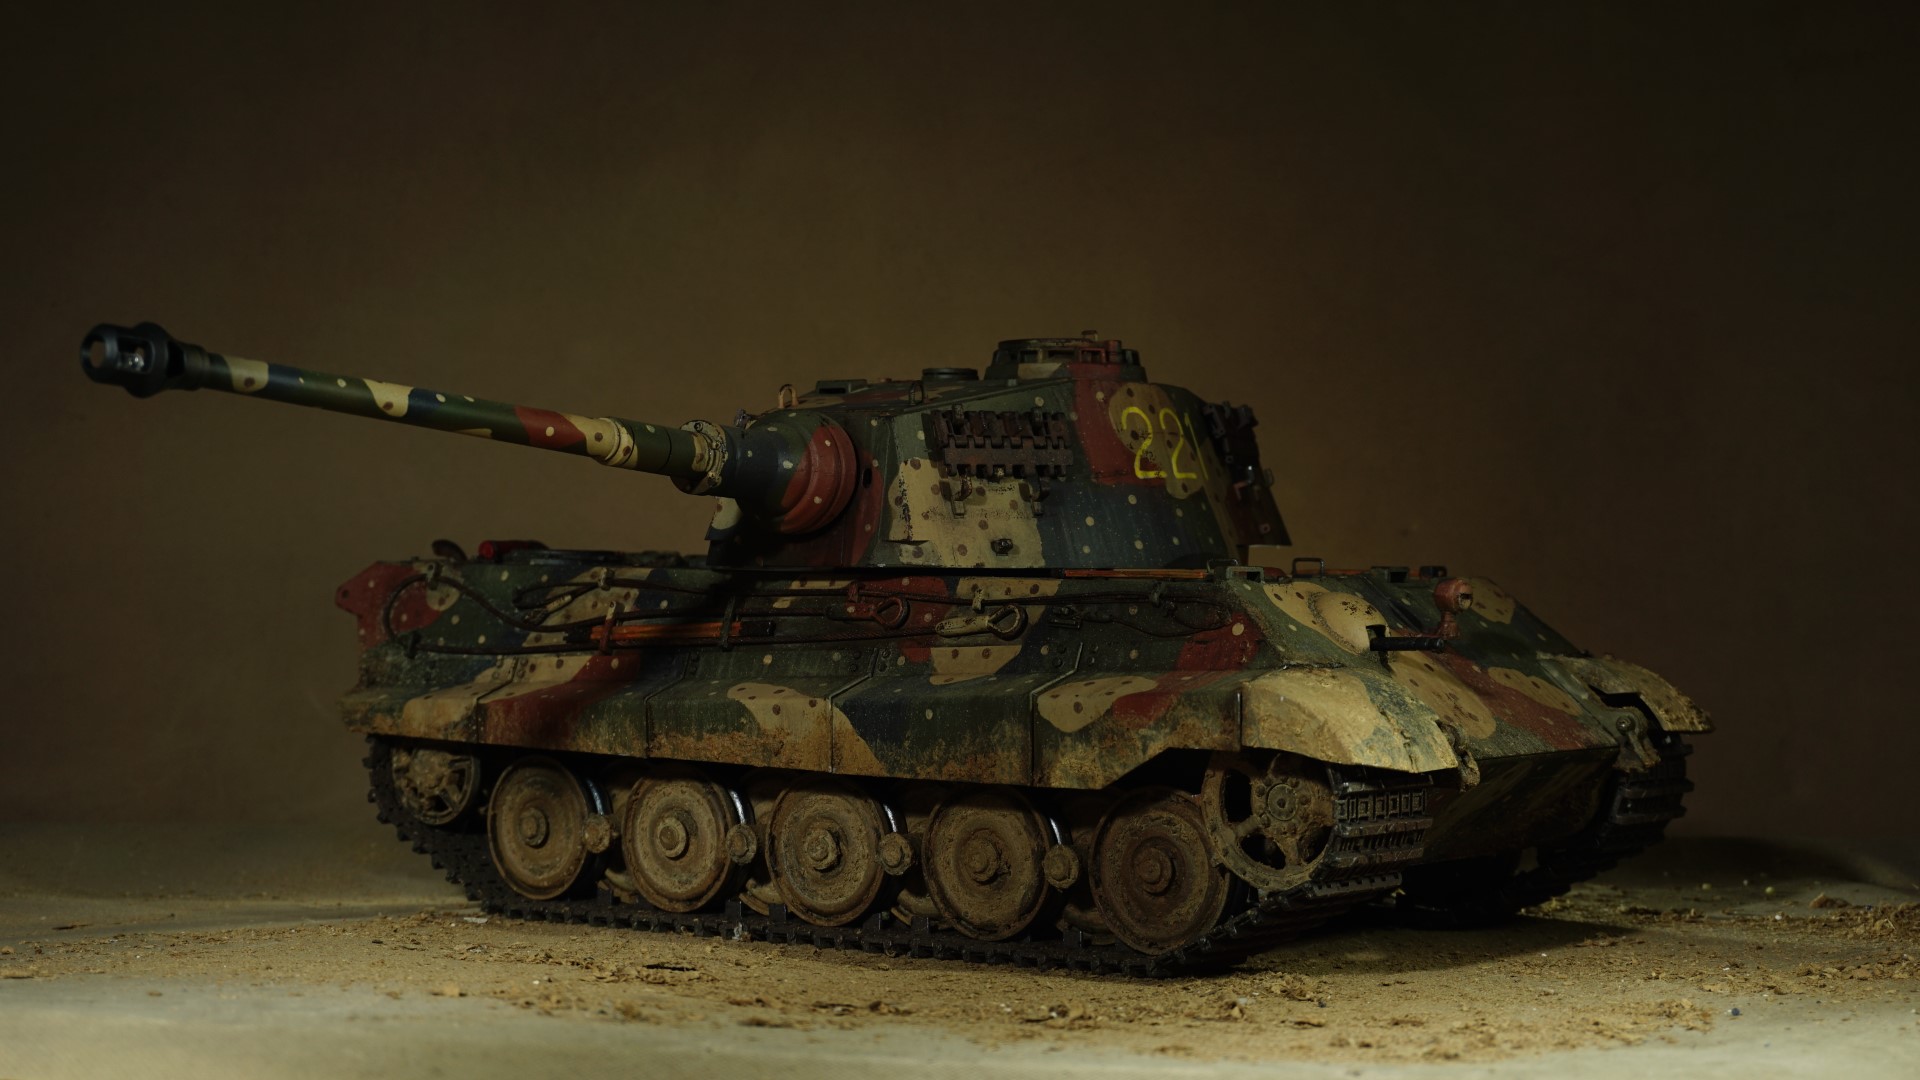 Full Metal Custom Weathered Paint King Tiger Scale Model RC Tank, "Kurt Knispel's Tiger II" Tank Skin Panzerkampfwagen Tiger Ausf. B Model